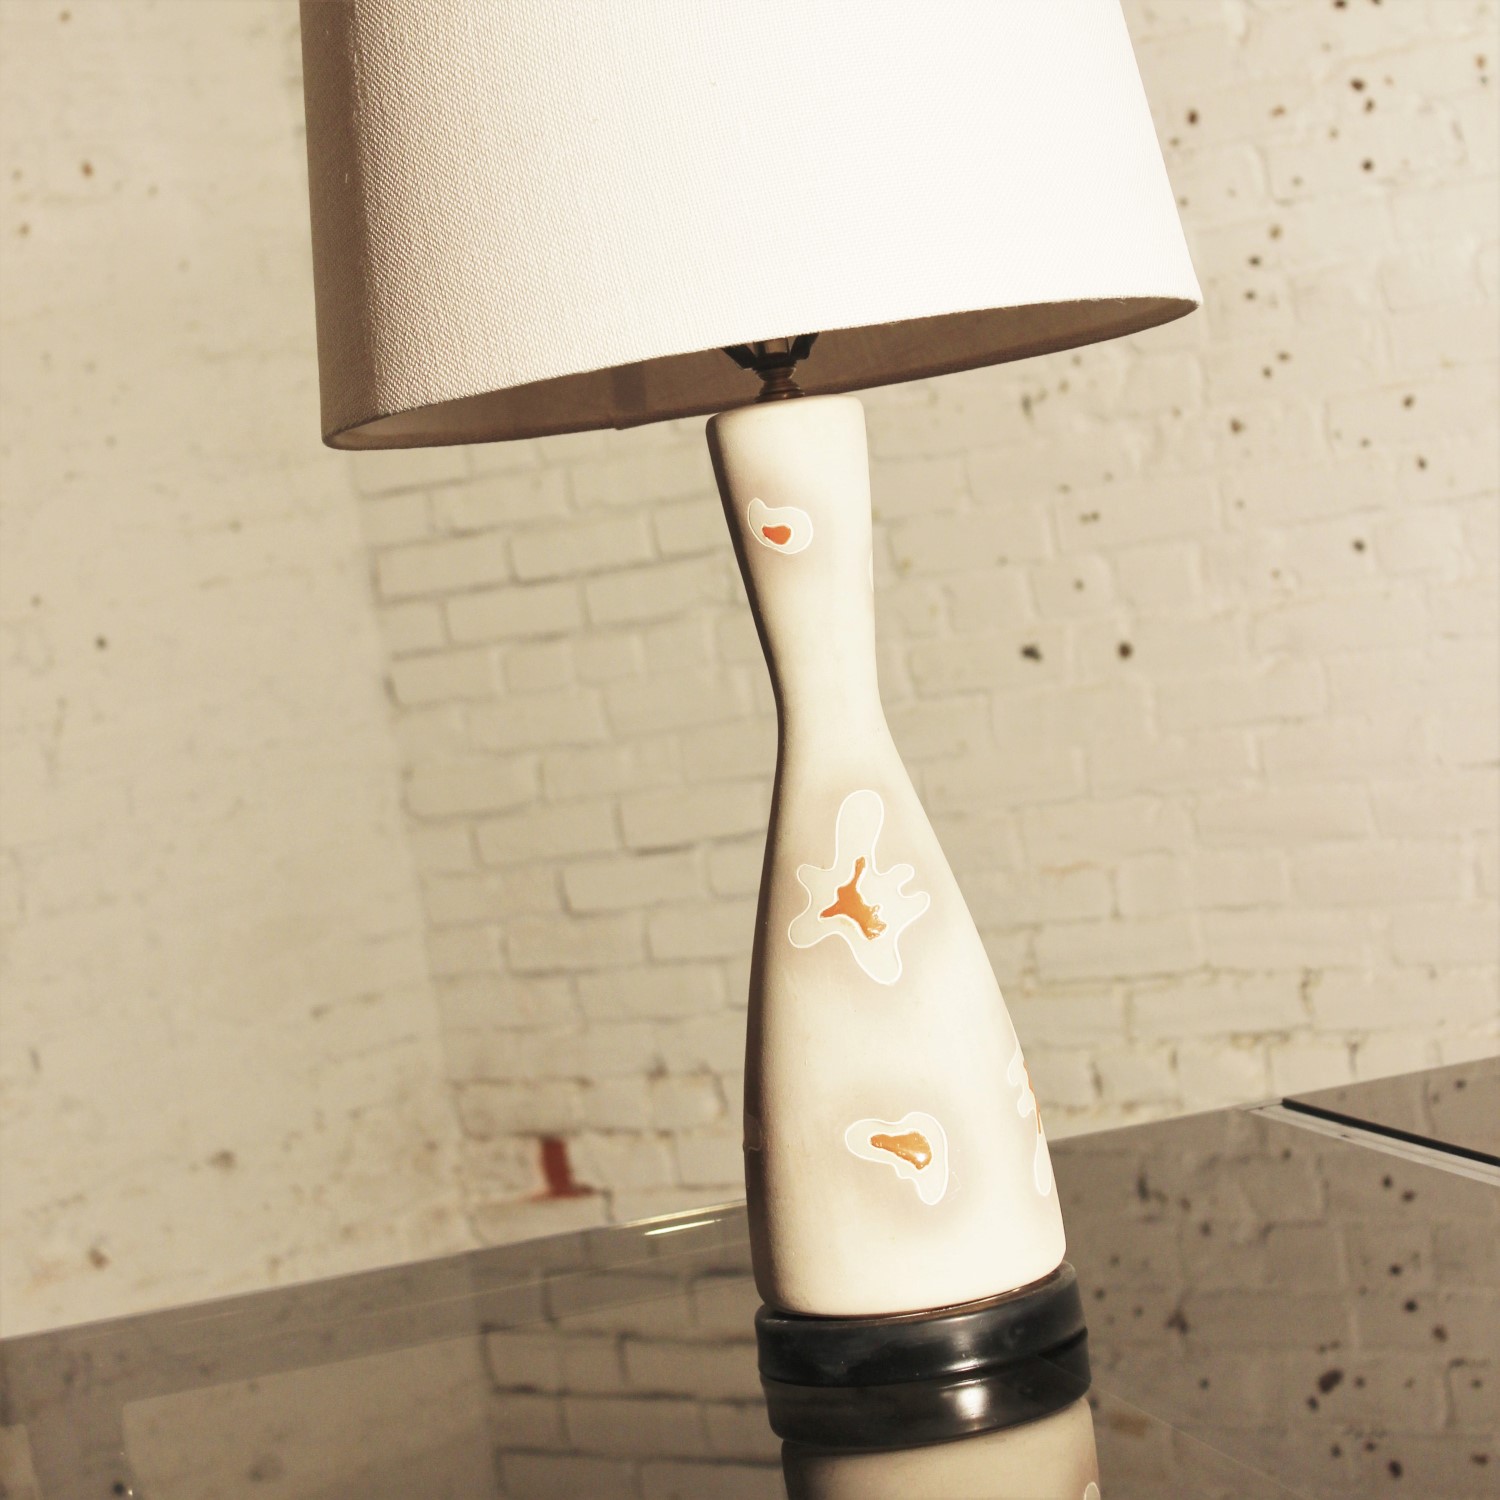 Biomorphic Design Ceramic Hourglass Table Lamp